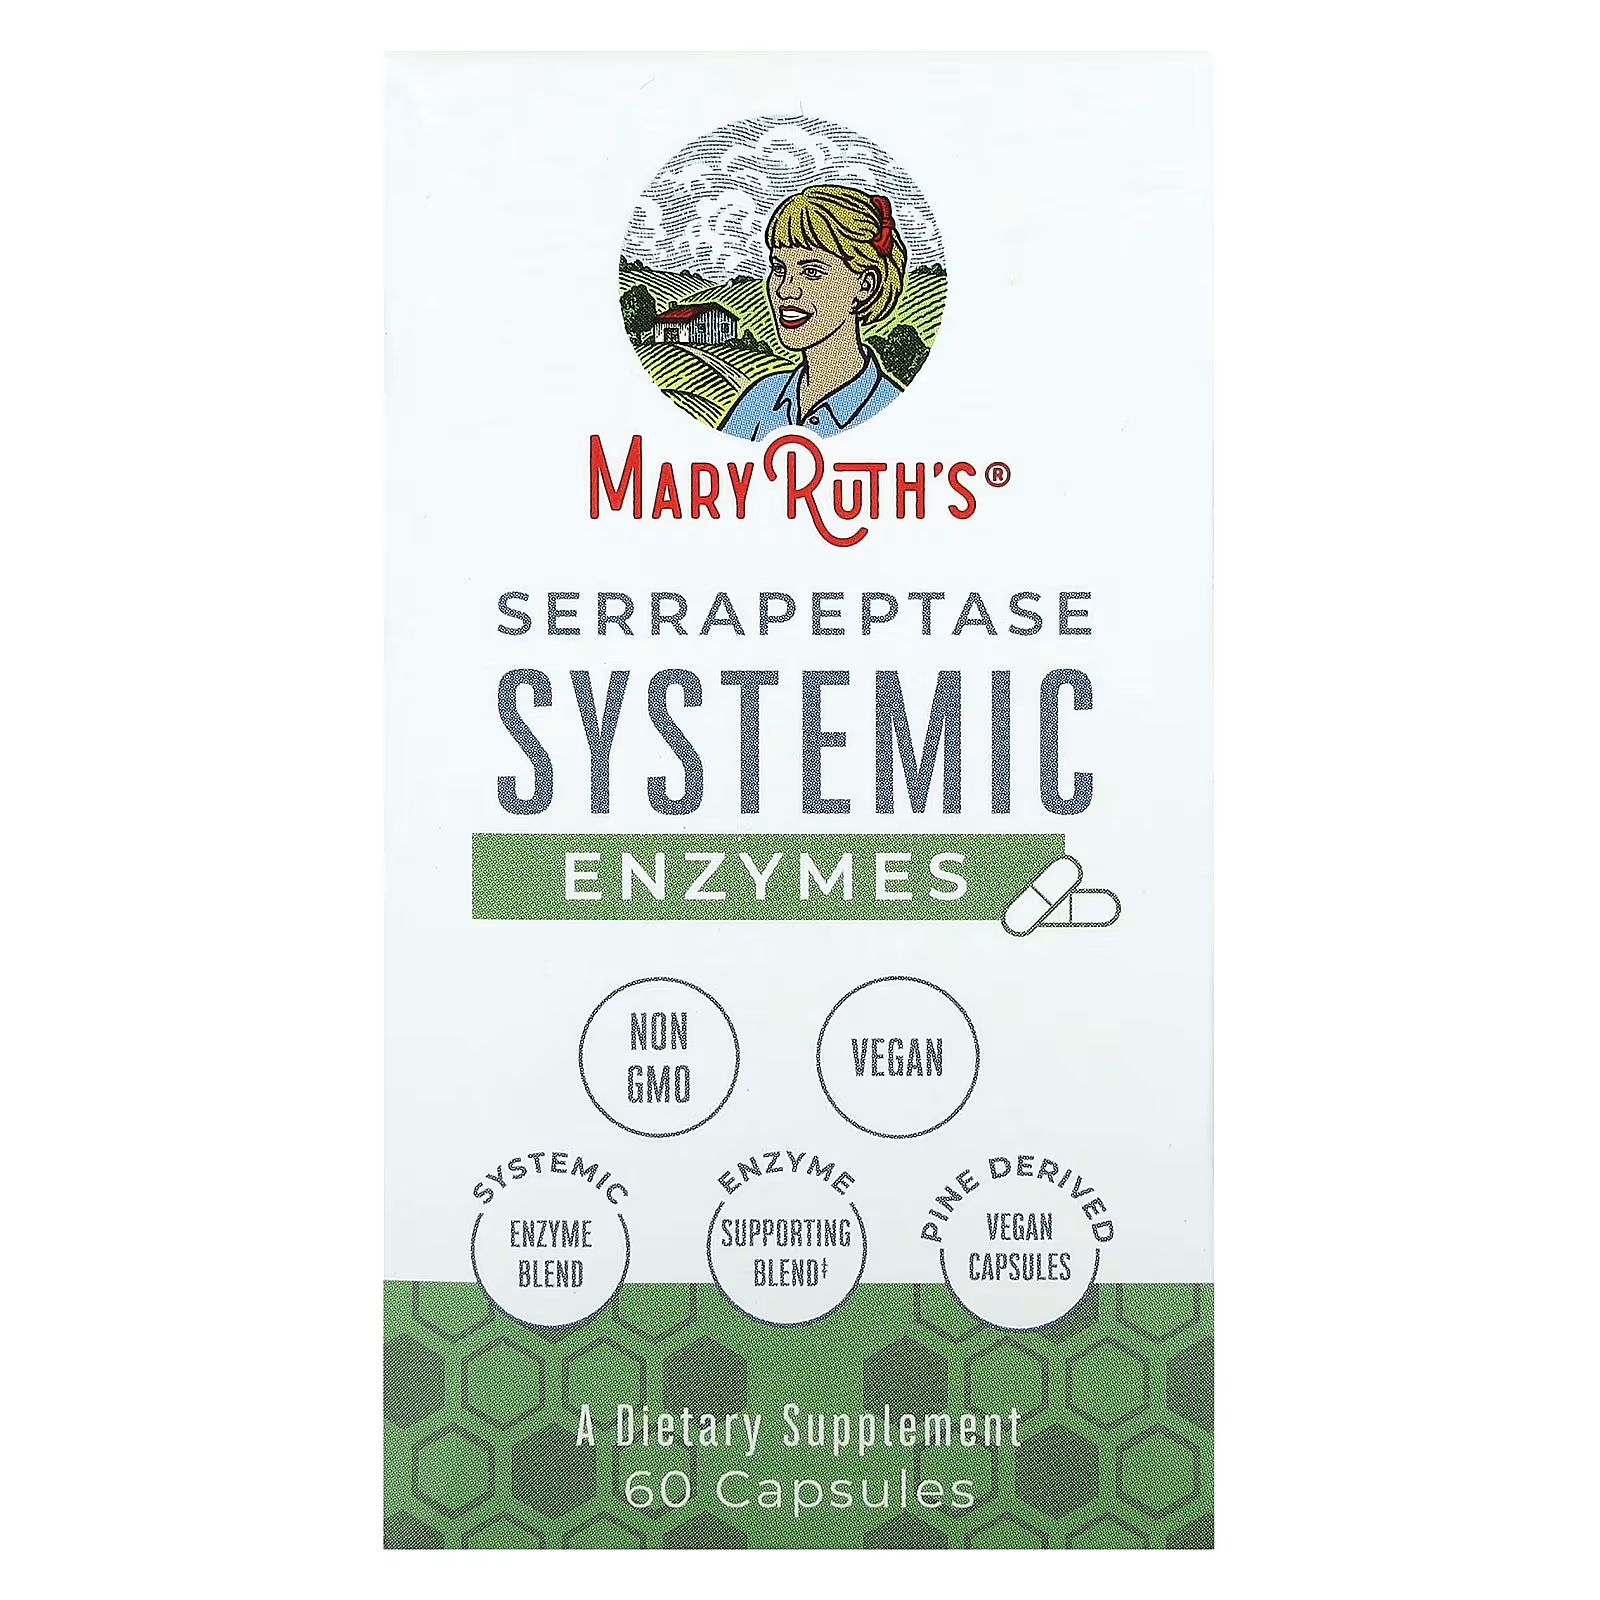 Системные ферменты серрапептазы MaryRuth, 60 капсул MaryRuth's maryruth organics ultra digestive food ферменты 60 капсул